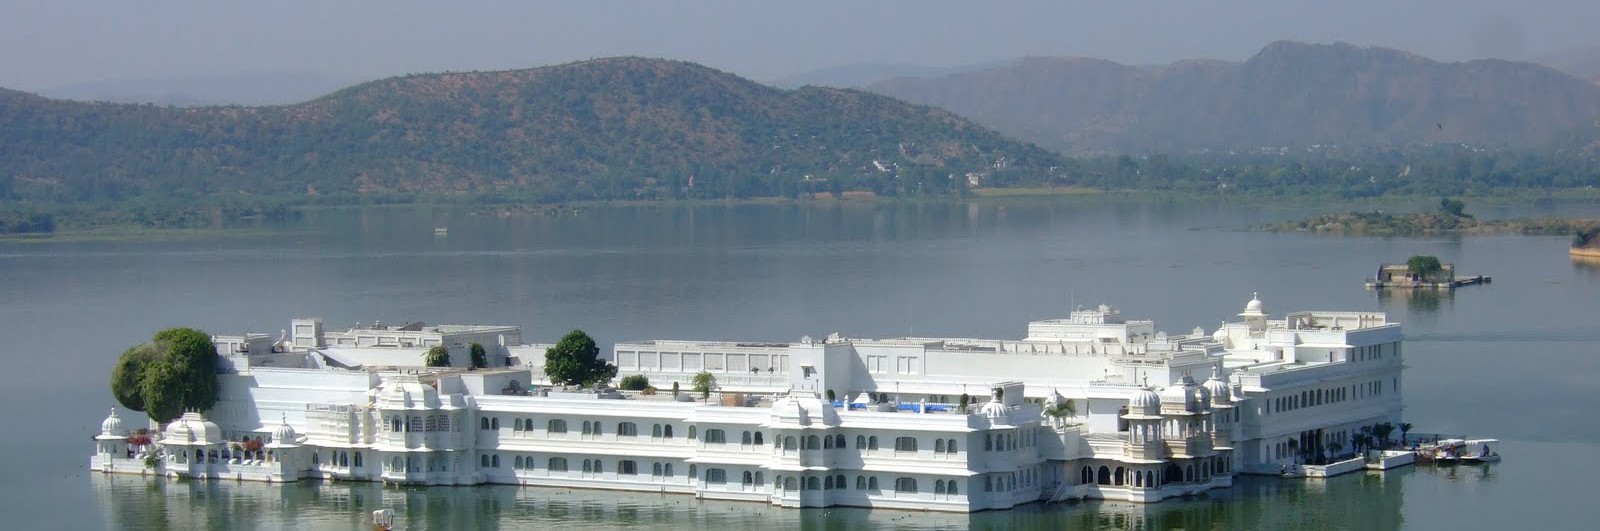 Taj Lake Palace Udaipur, Rajasthan (1)